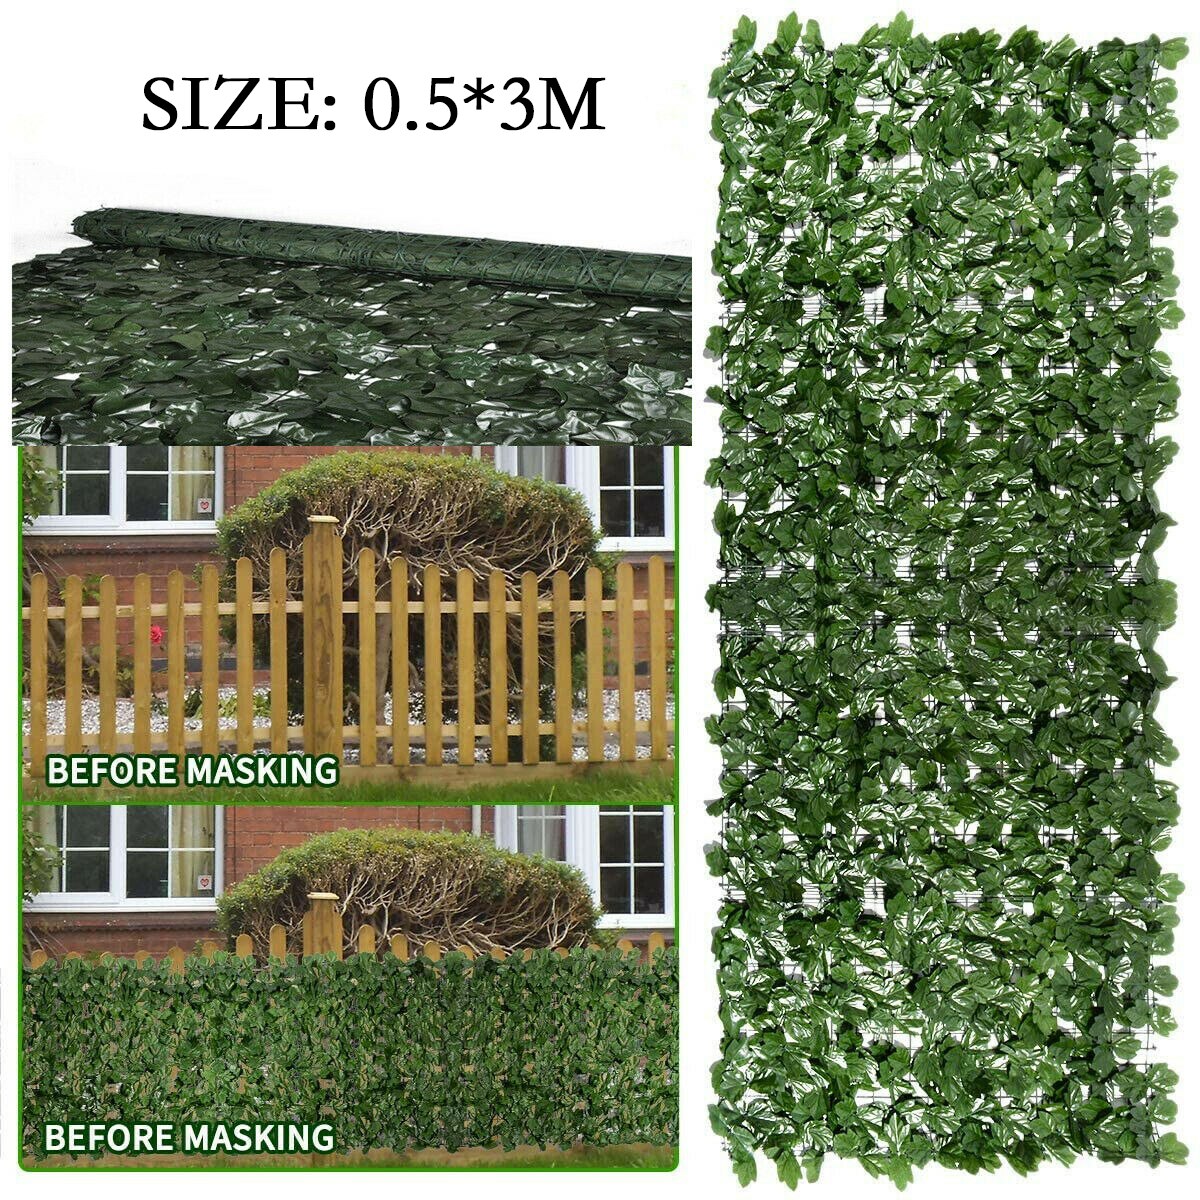 1m/3m kunstige bladhæk ivy hæk have dekorativt hegn altan privatliv vægbeklædning alt til havedekorationen